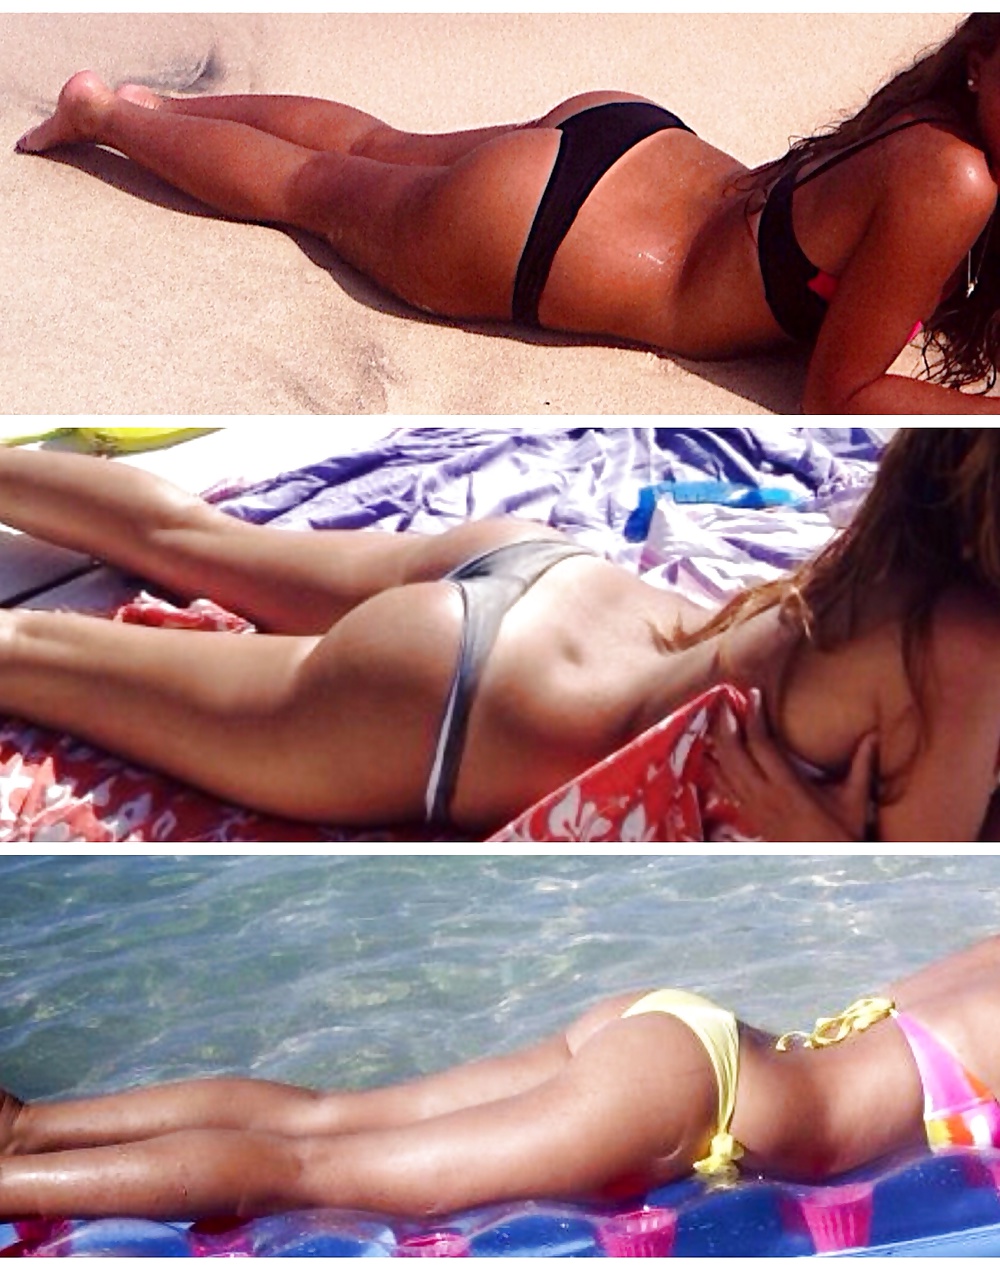 Italian ass teen bikini beach